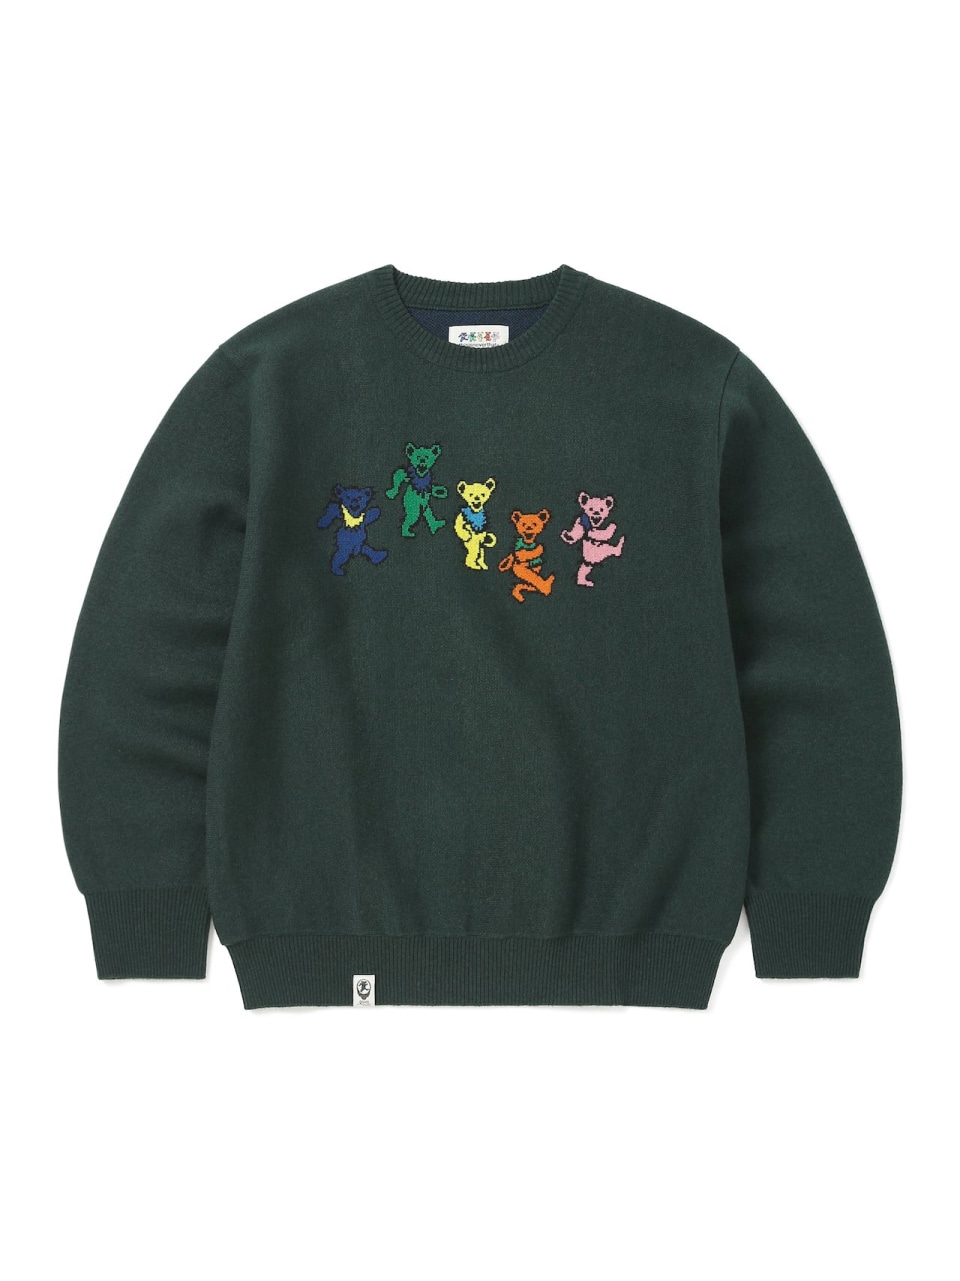 ディスイズネバーザットGD Dancing Bears Knit Sweater Dark Green GD233KKNPK01DKG男女兼用サイズ